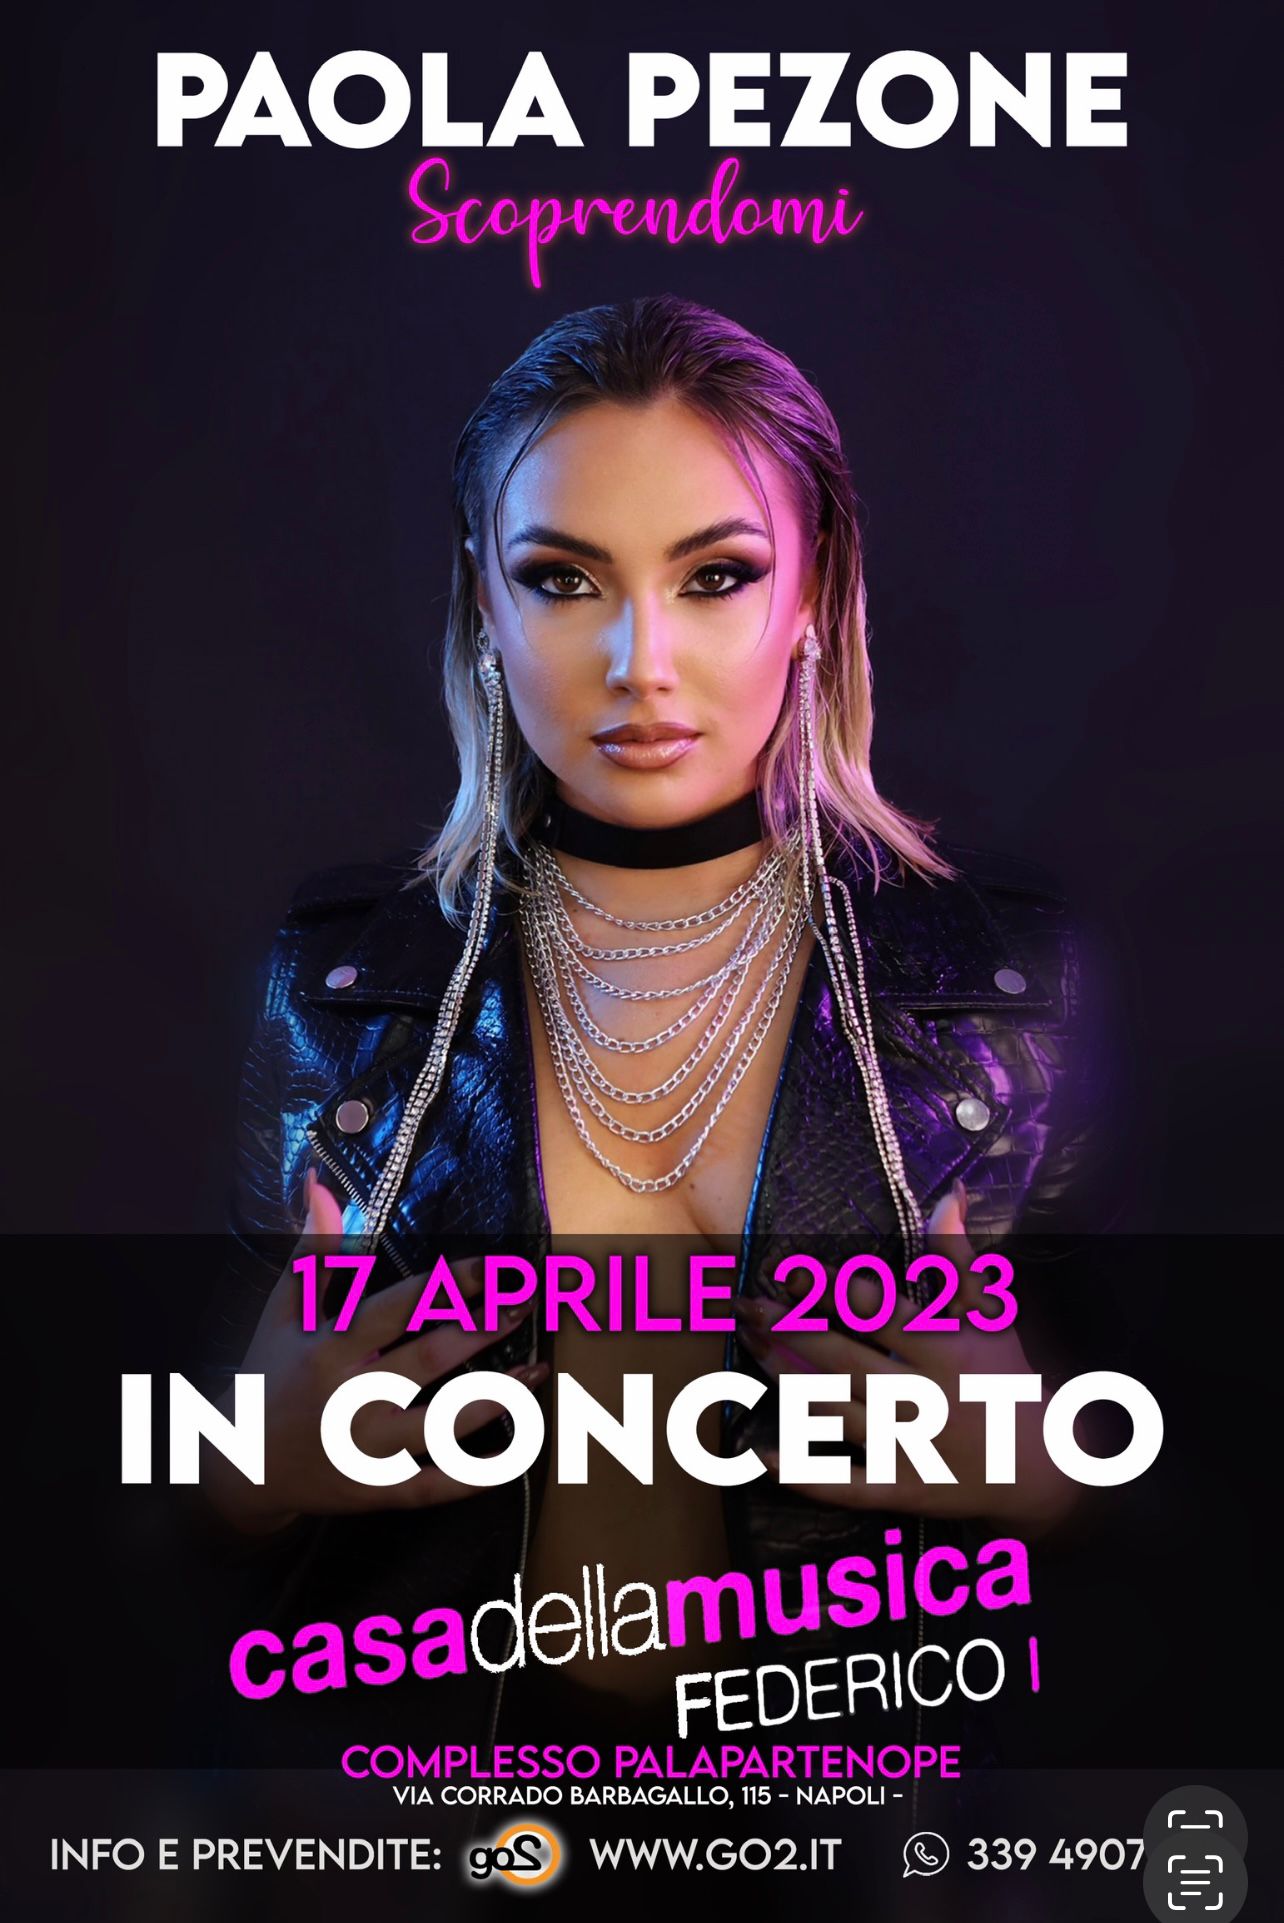  Paola Pezone Il 17 aprile in concerto alla Casa della musica di Fuorigrotta